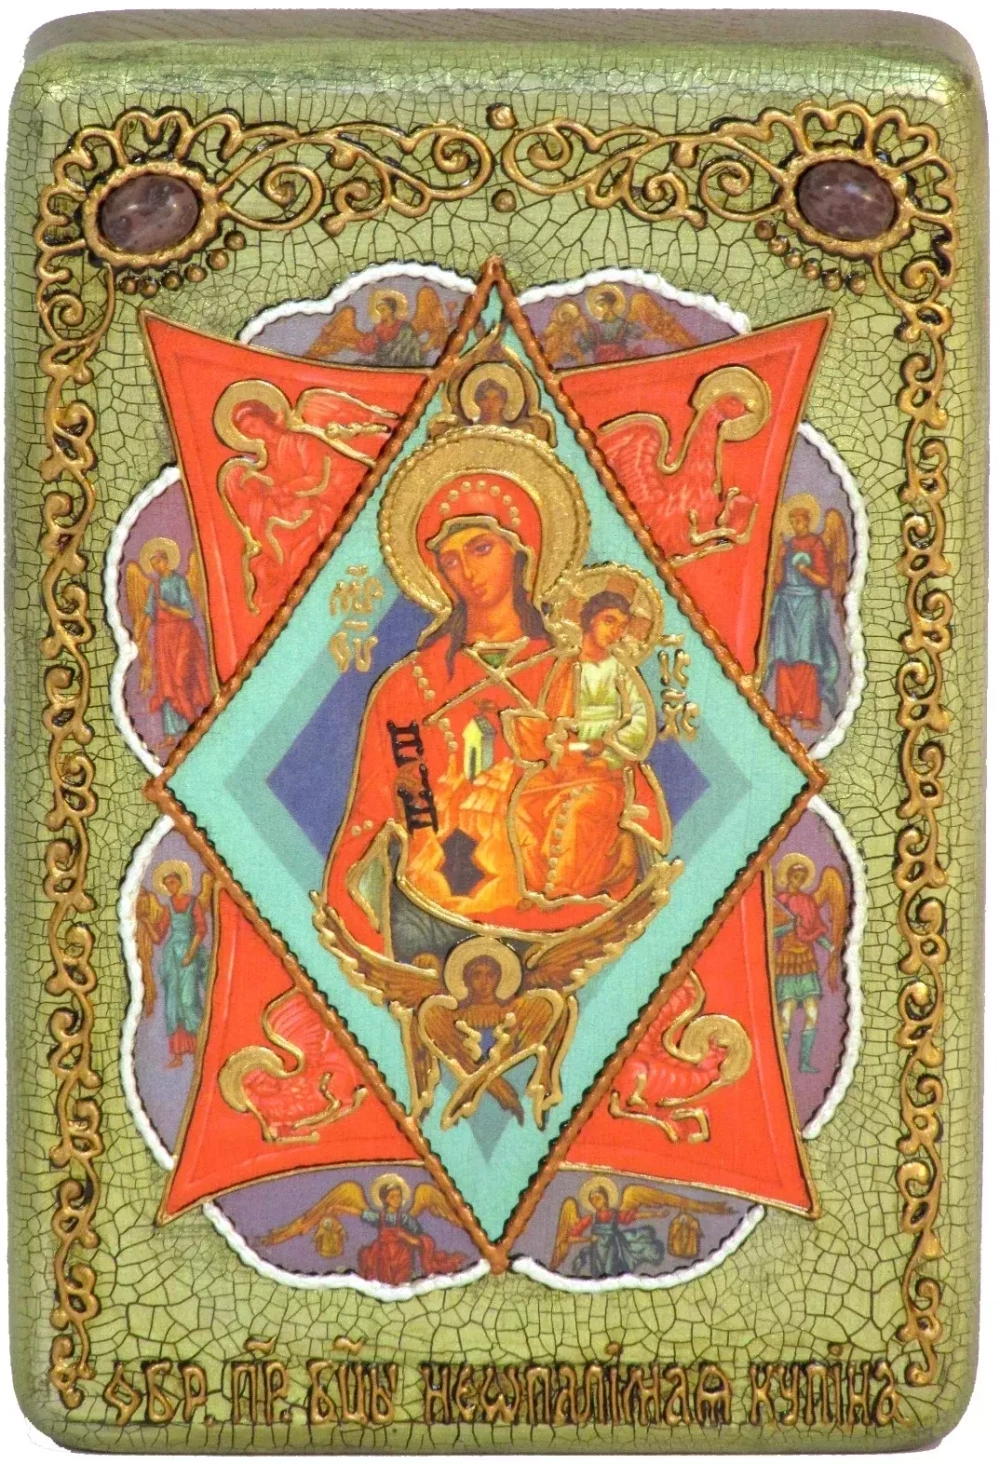 Икона Божией Матери Неопалимая купина 15х10см на натуральном дереве, в подарочной коробке